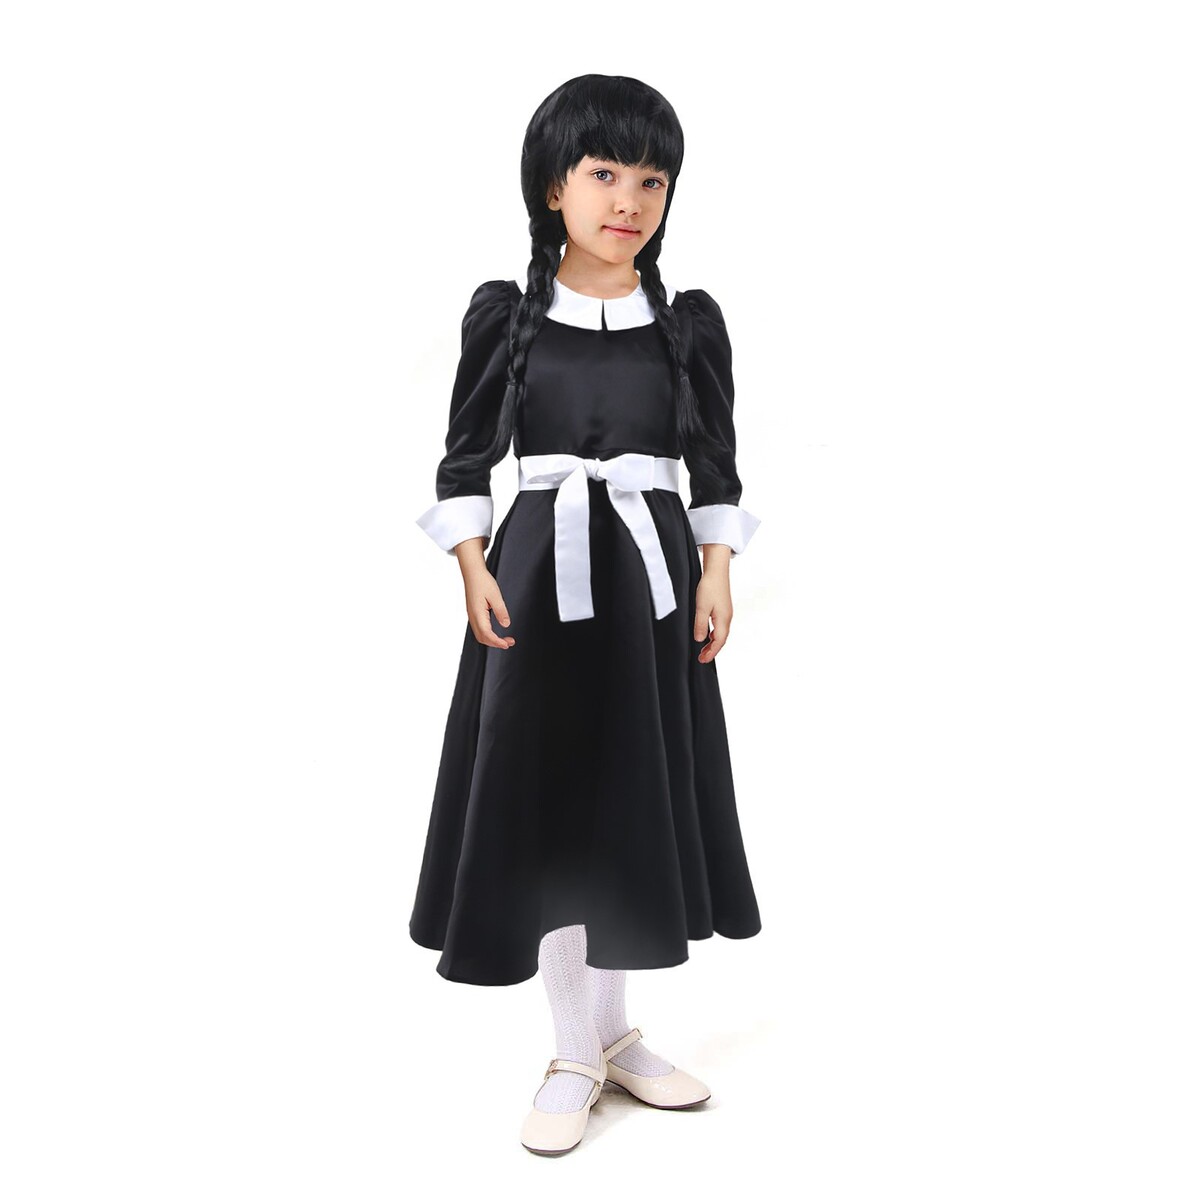 Карнавальное черное платье с белым воротником,атлас,п/э,р-р34,р134 атлас и аксис т3